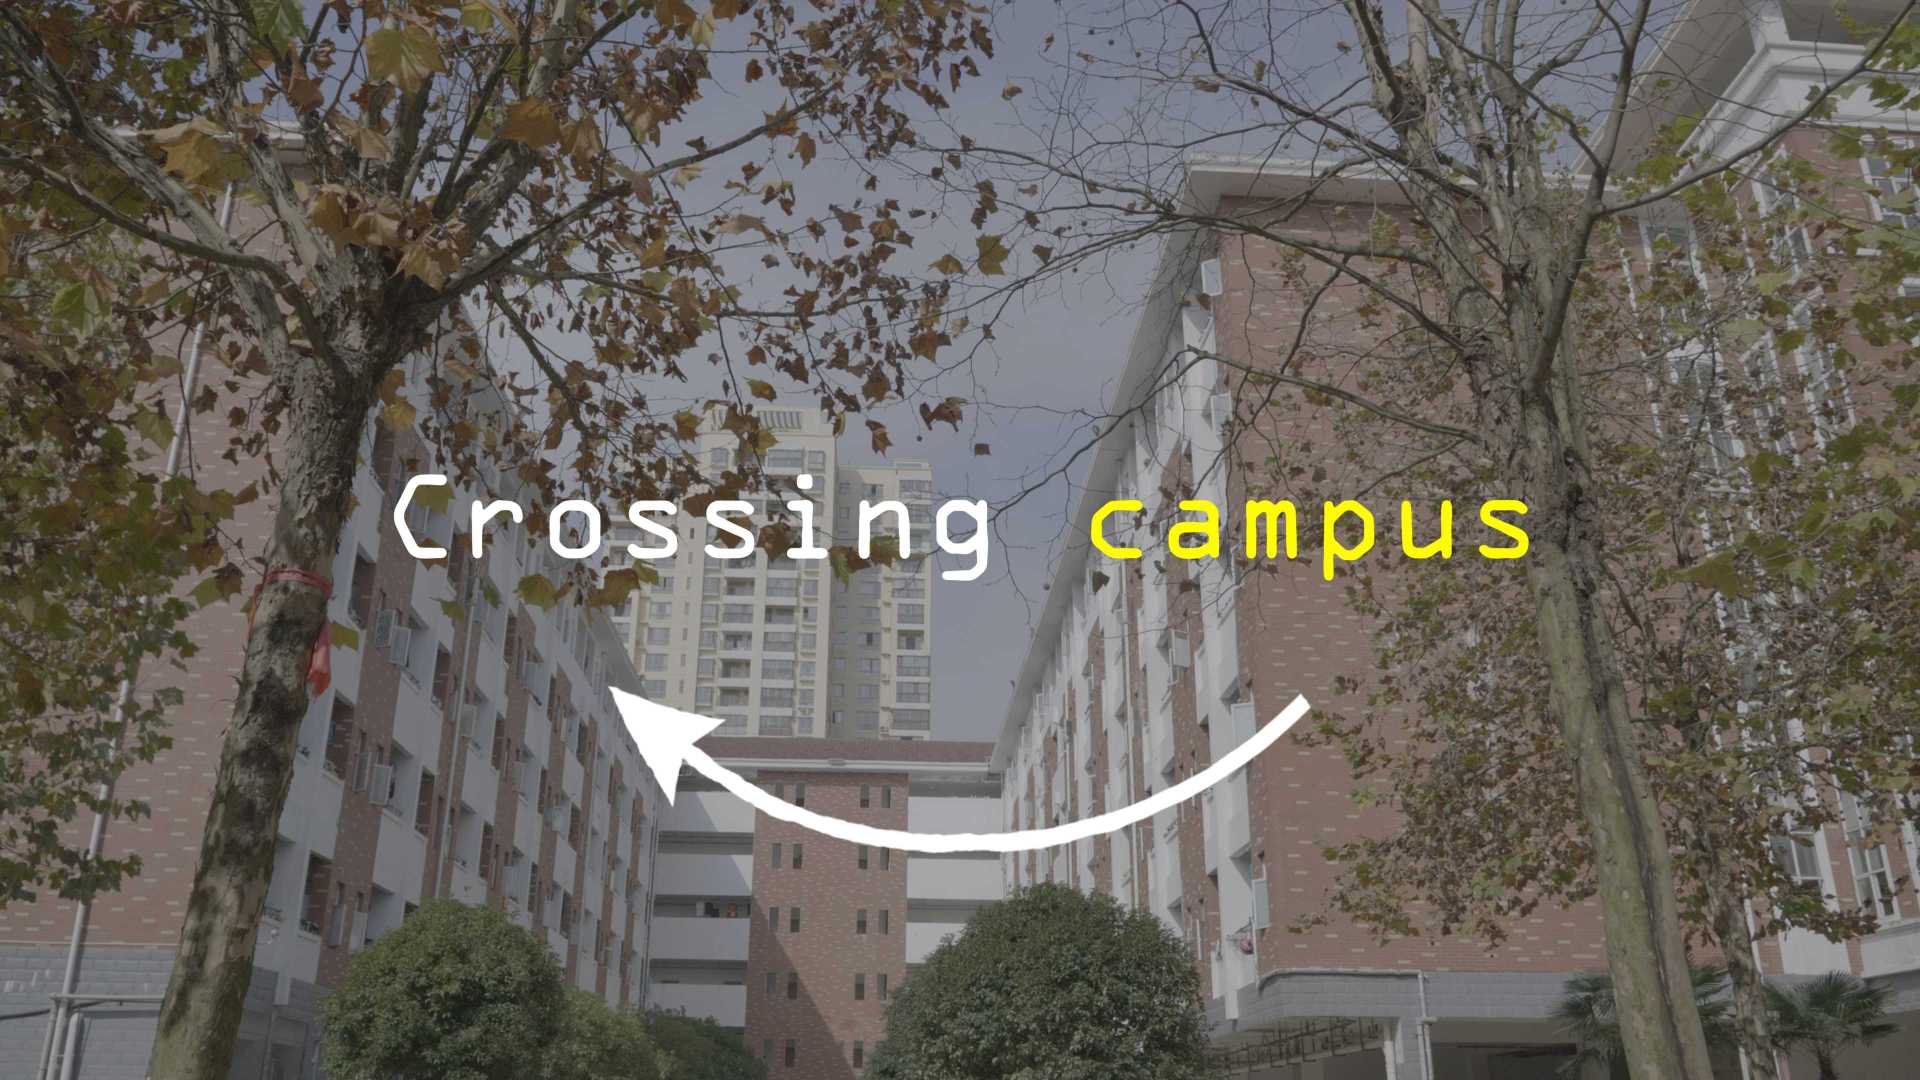 Crossing campus